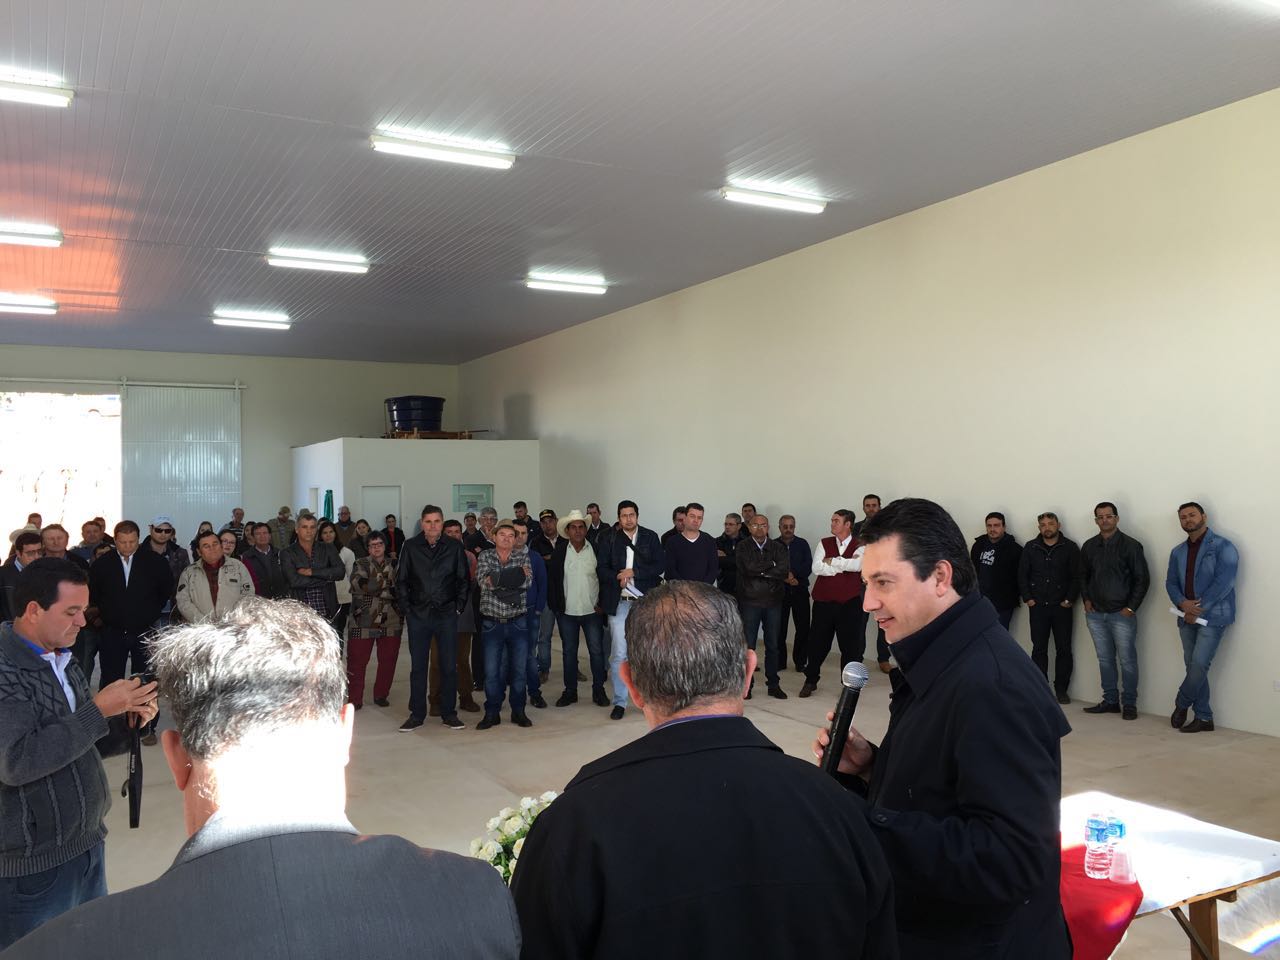 IMG 7840 - Sérgio Souza inaugura barracões industrias em Arapuã e Ariranha do Ivaí